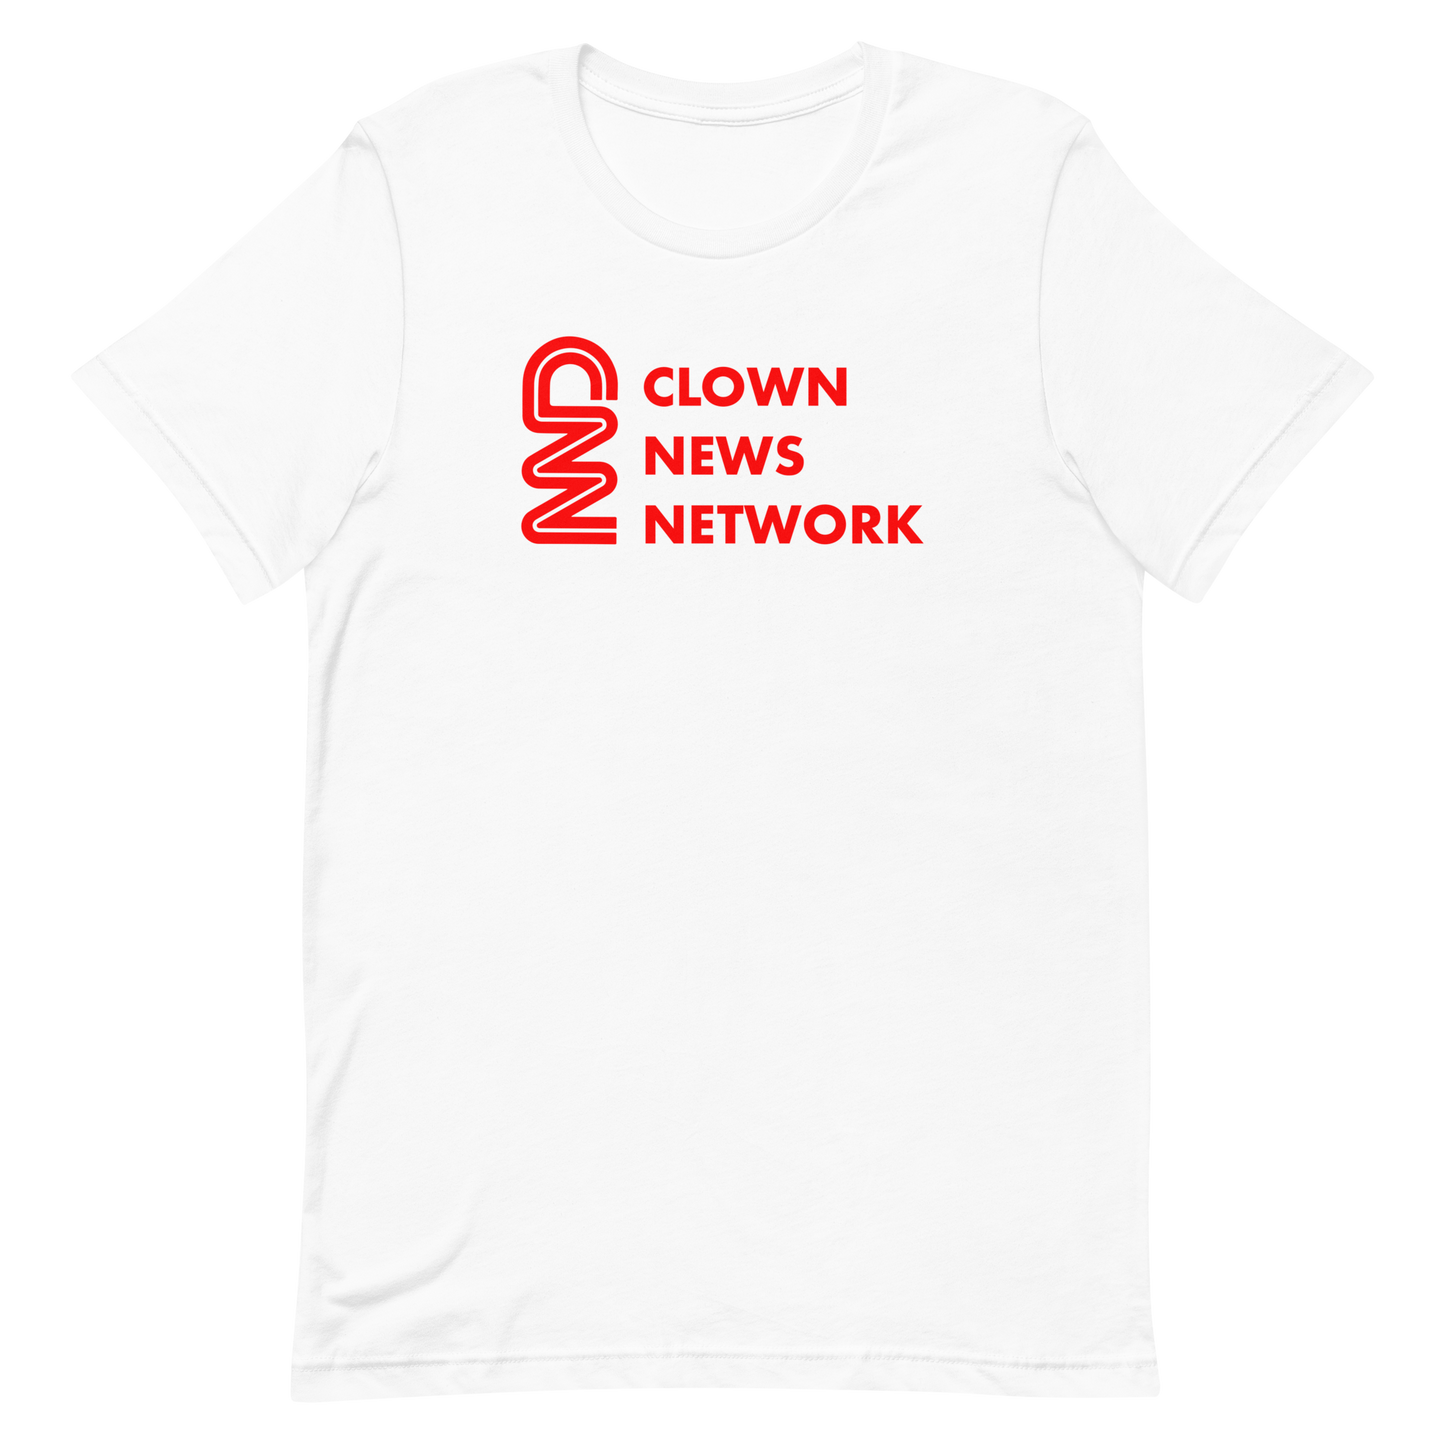 CNN - Clown News Network T-shirt